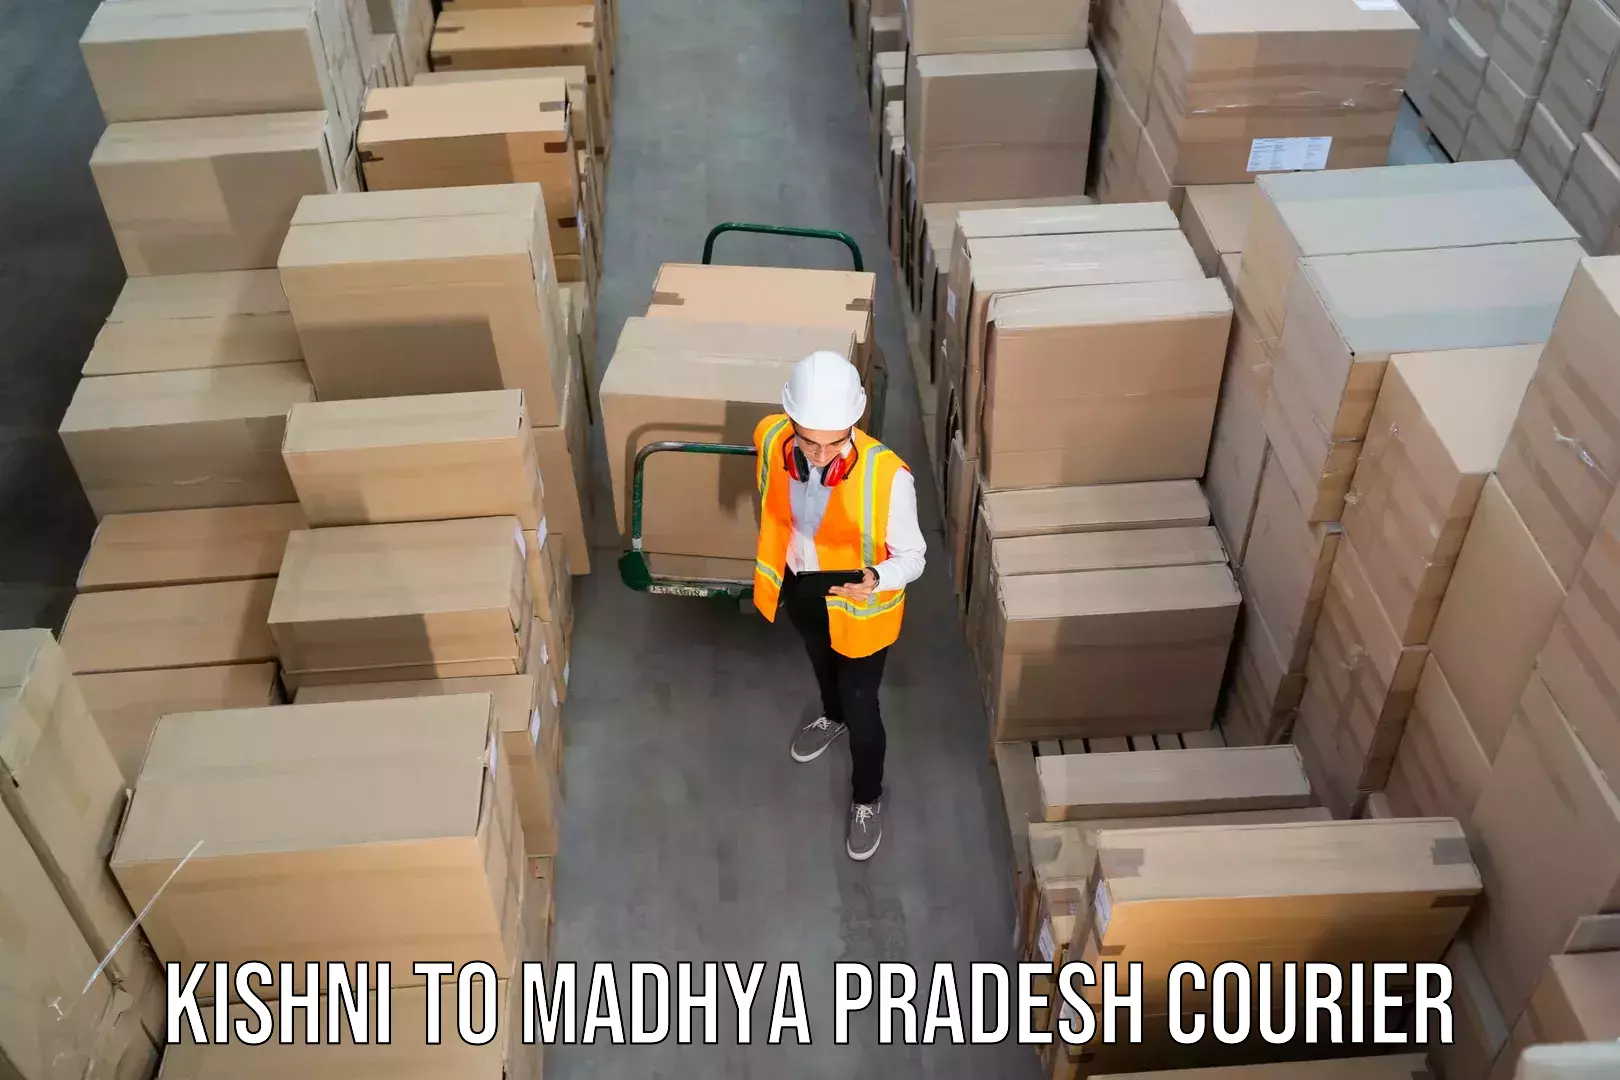 Affordable parcel service Kishni to Shivpuri